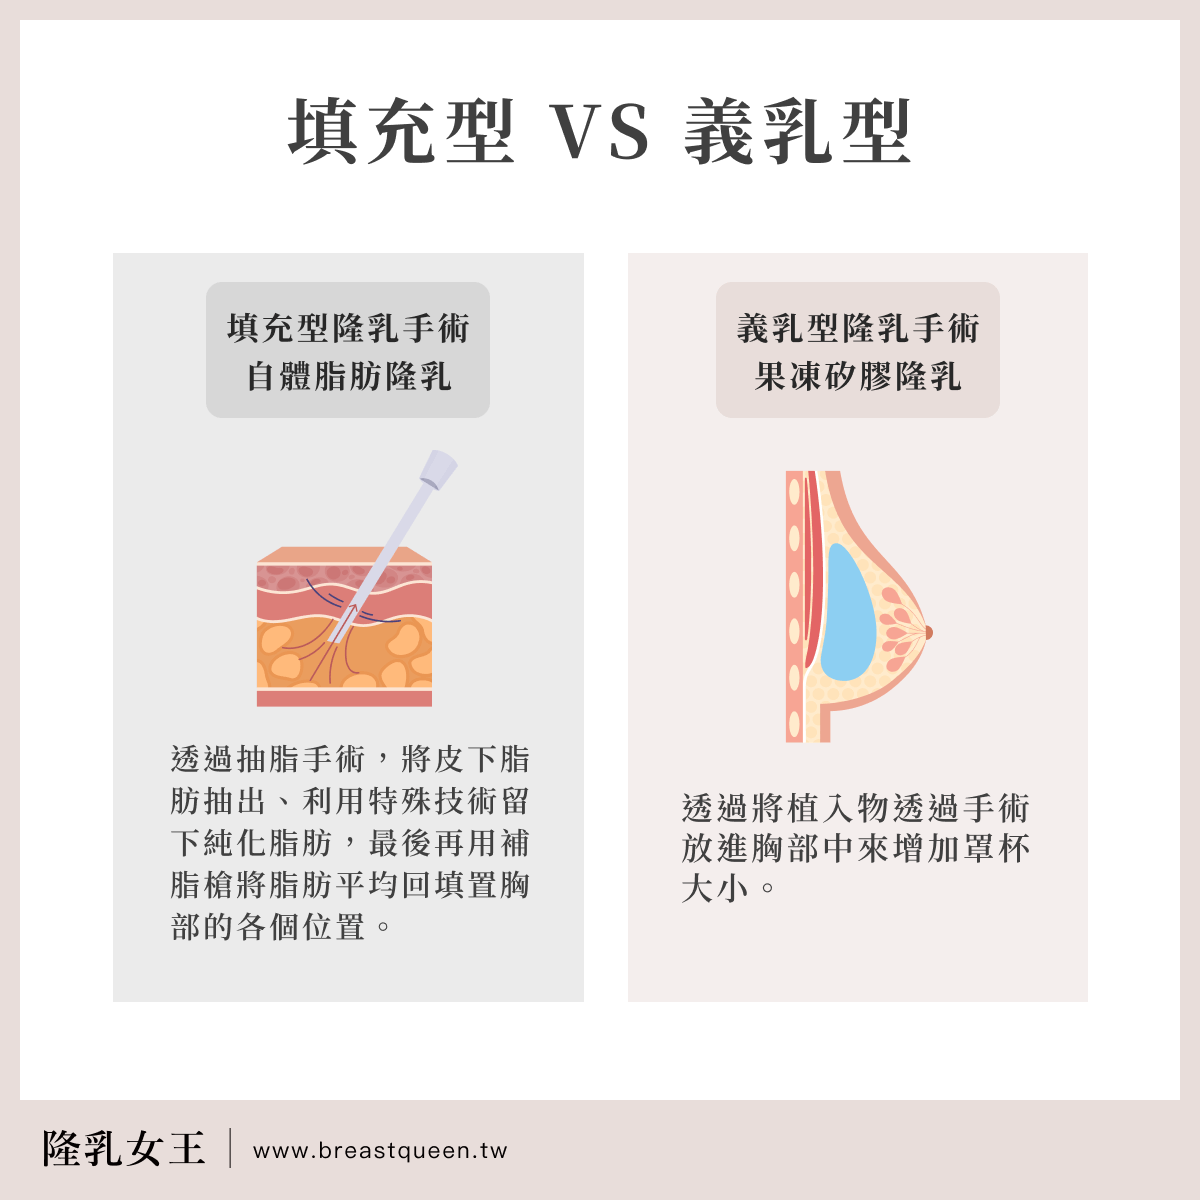 隆乳手術可簡單分為以下2大類